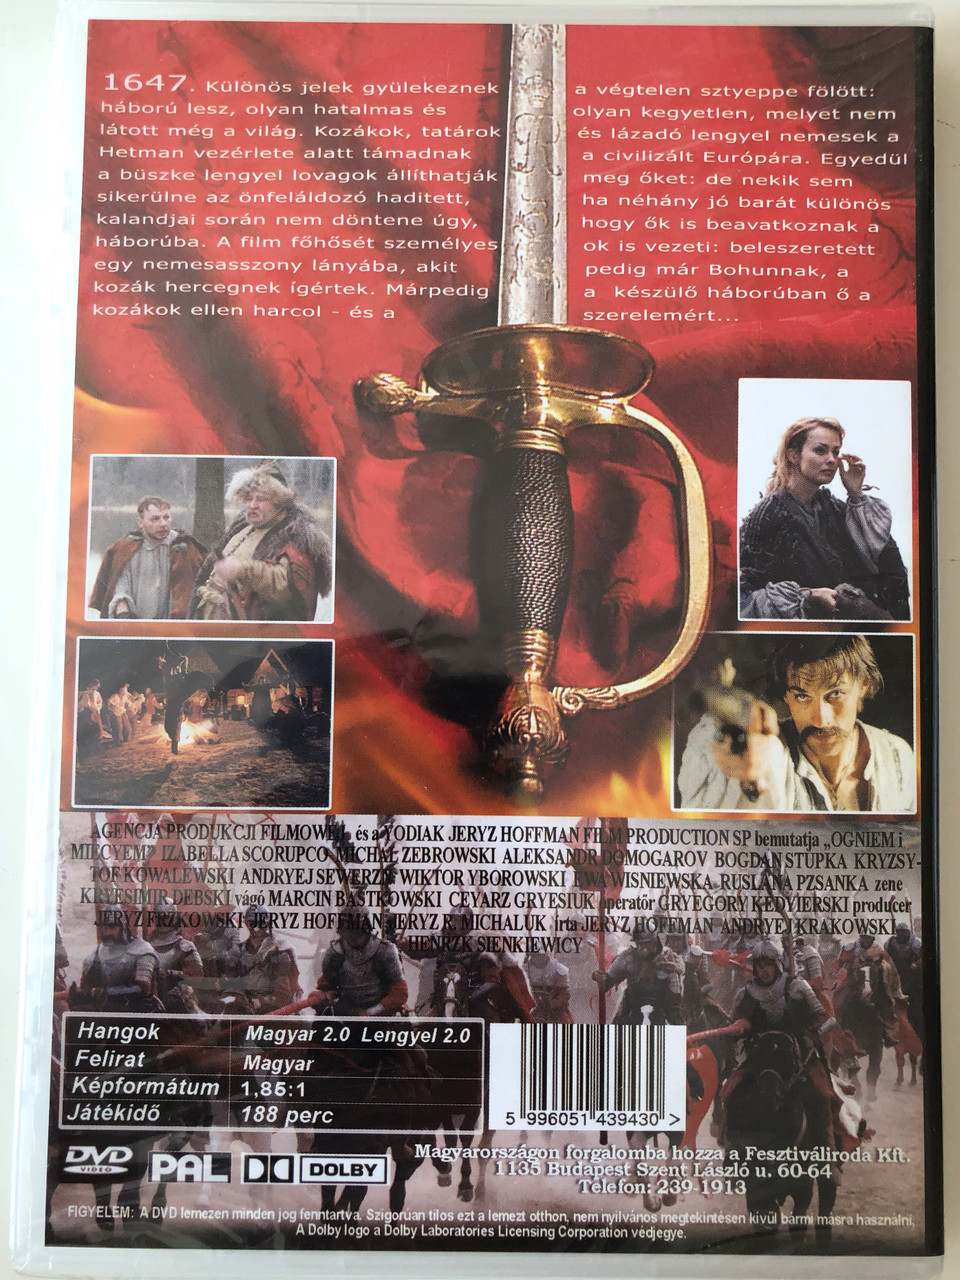 Ogniem i mieczem DVD 1999 Tűzzel-vassal (With Fire and Sword ) / Directed  by Jerzy Hoffman / Starring: Izabella Scorupco, Michał Żebrowski, Aleksandr  Domogarov - bibleinmylanguage